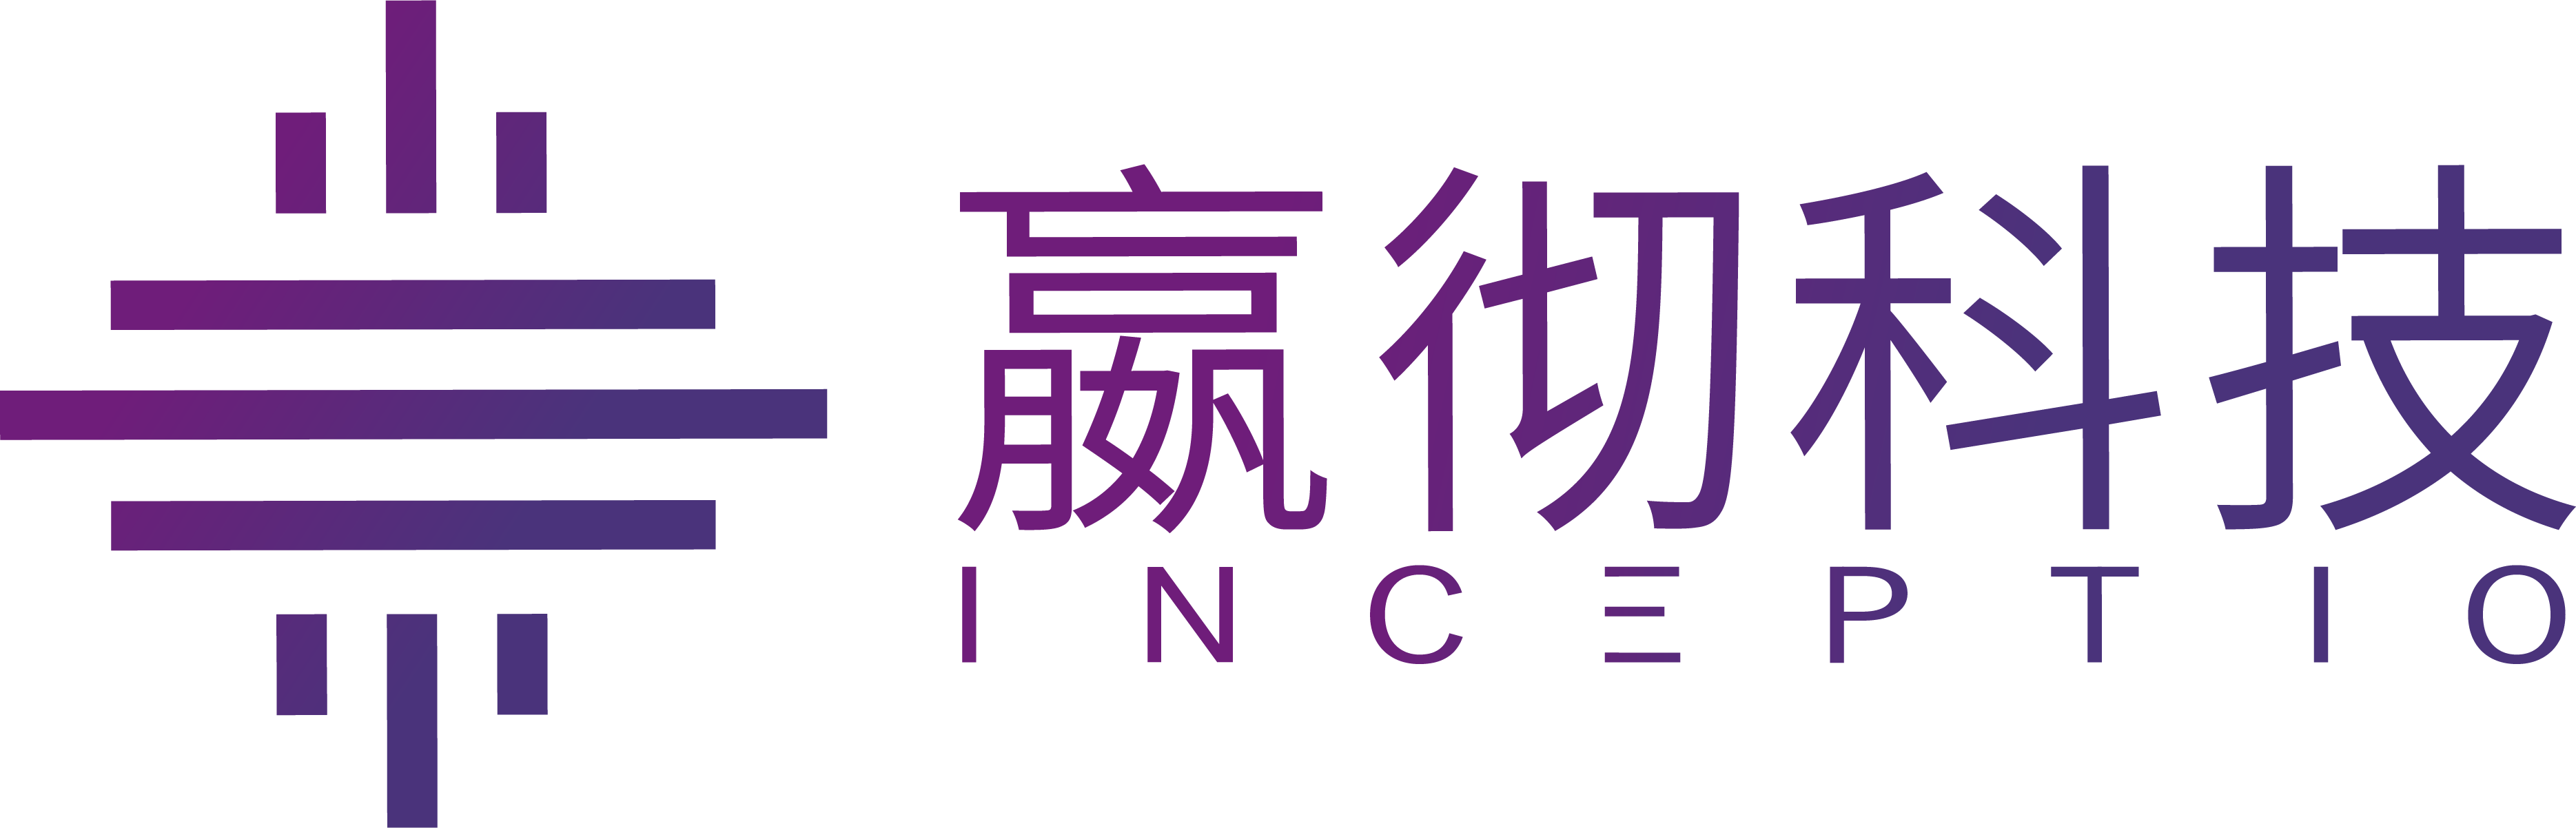 嬴彻大中文蓝紫logo最终